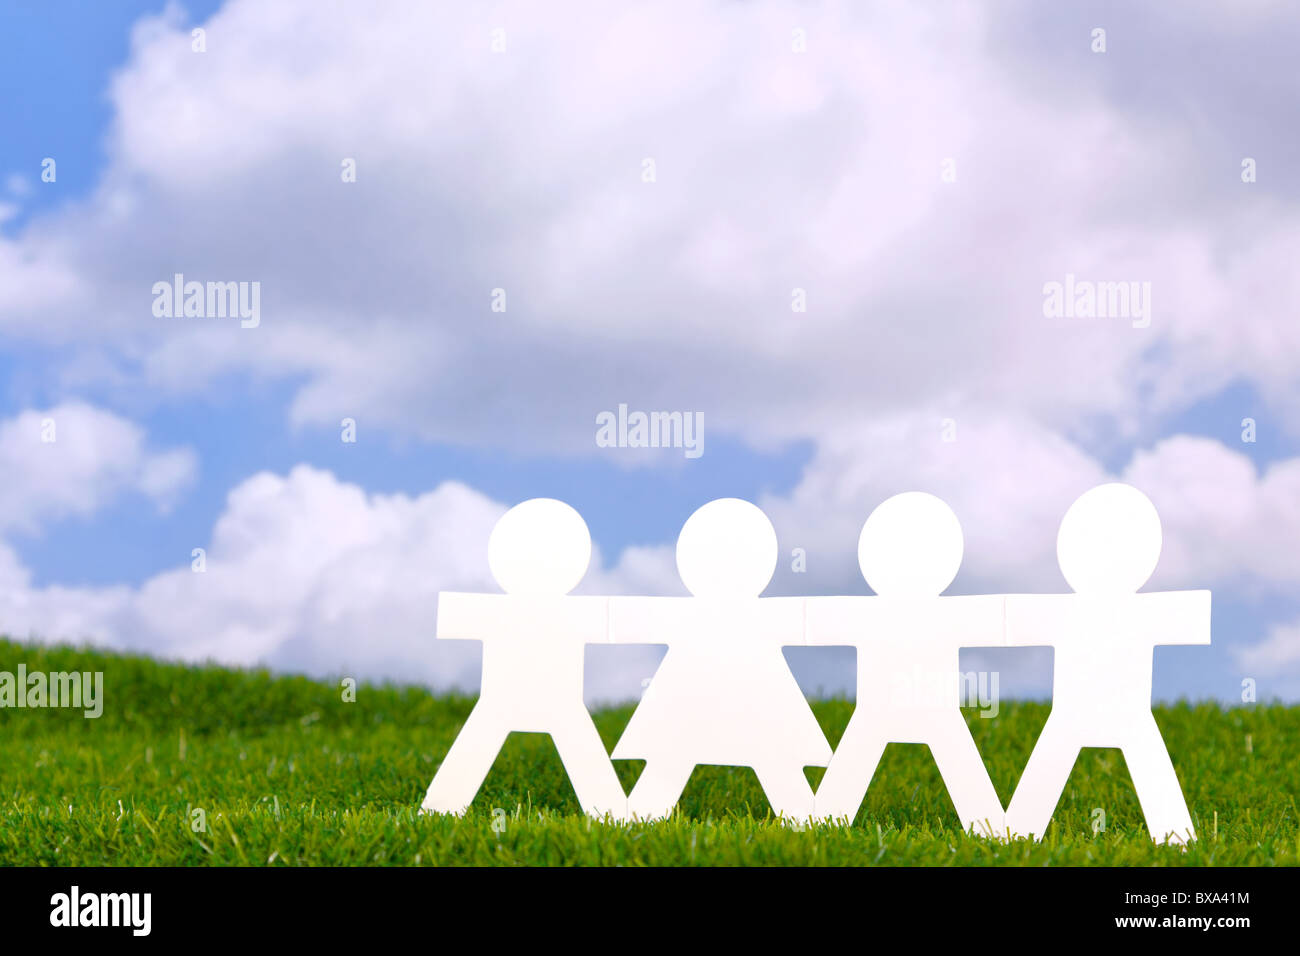 Konzept-Bild von Papier Menschen Hand in Hand in einem Feld mit einem blauen Himmelshintergrund. Stockfoto